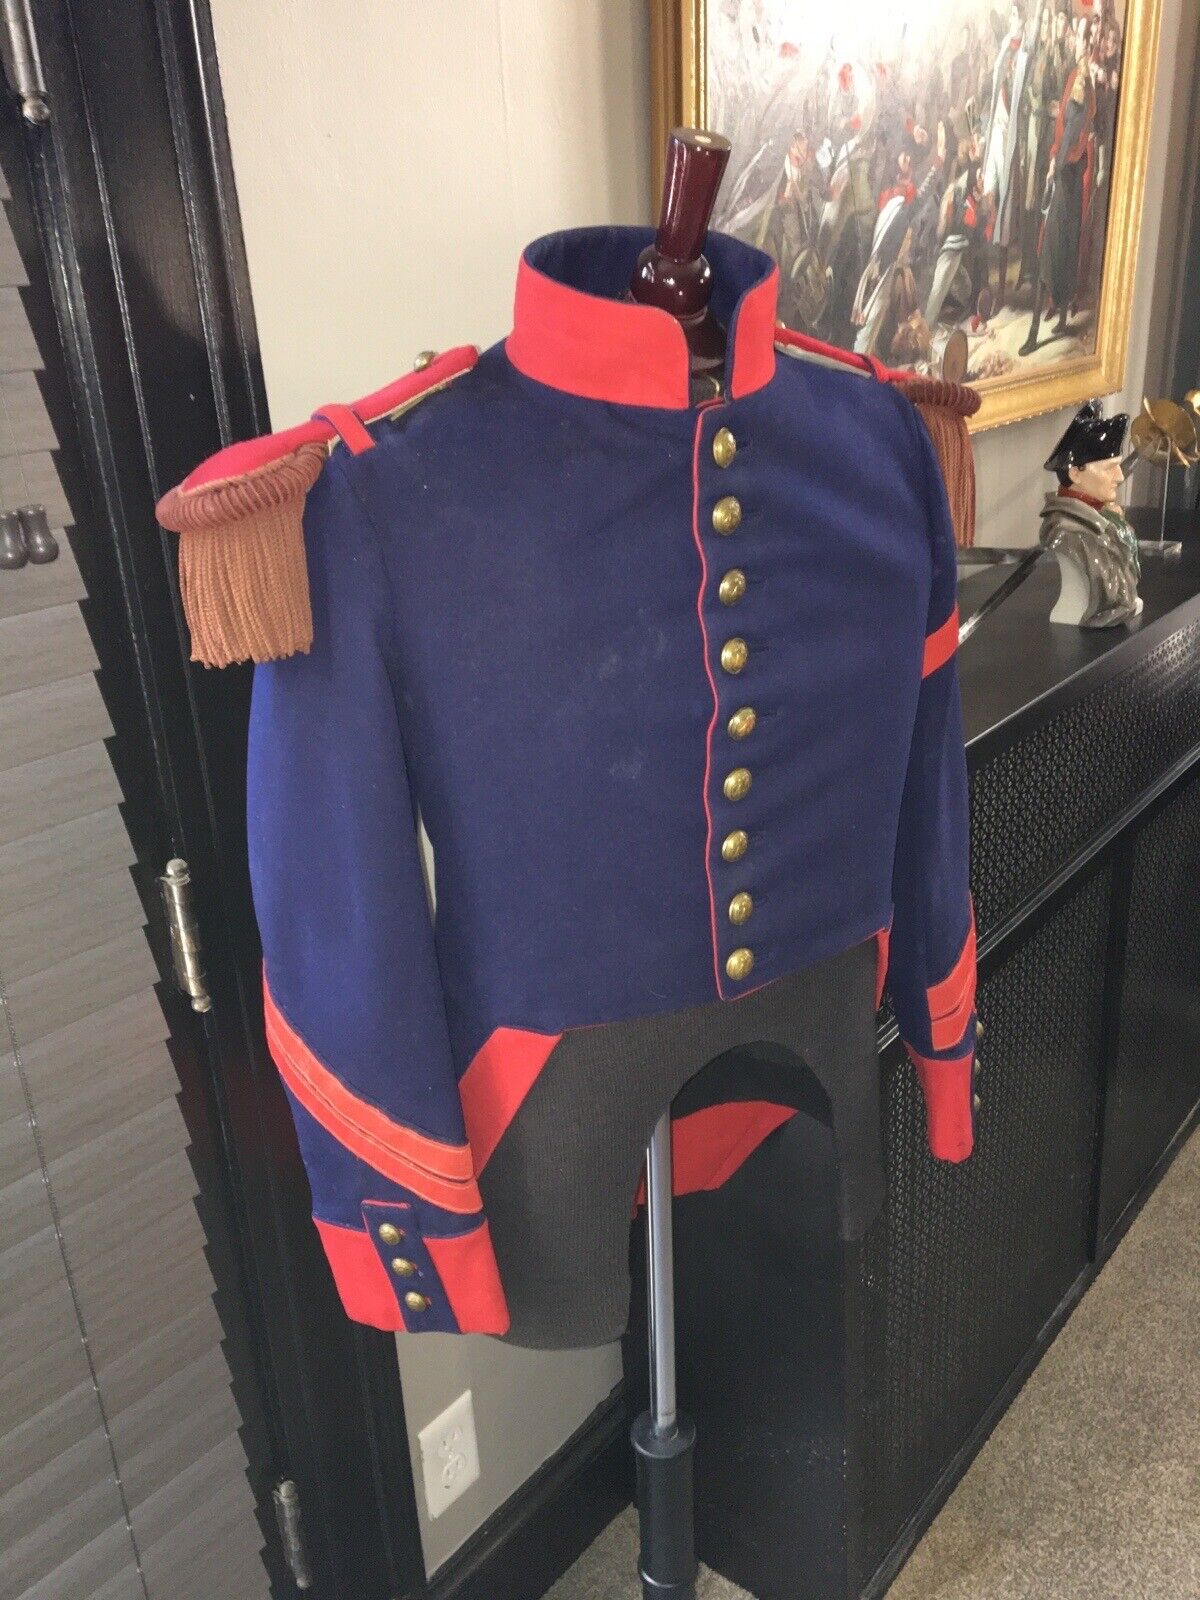 1830 Pattern French Infantry Uniform, Napoleonic-style coatee/tunic